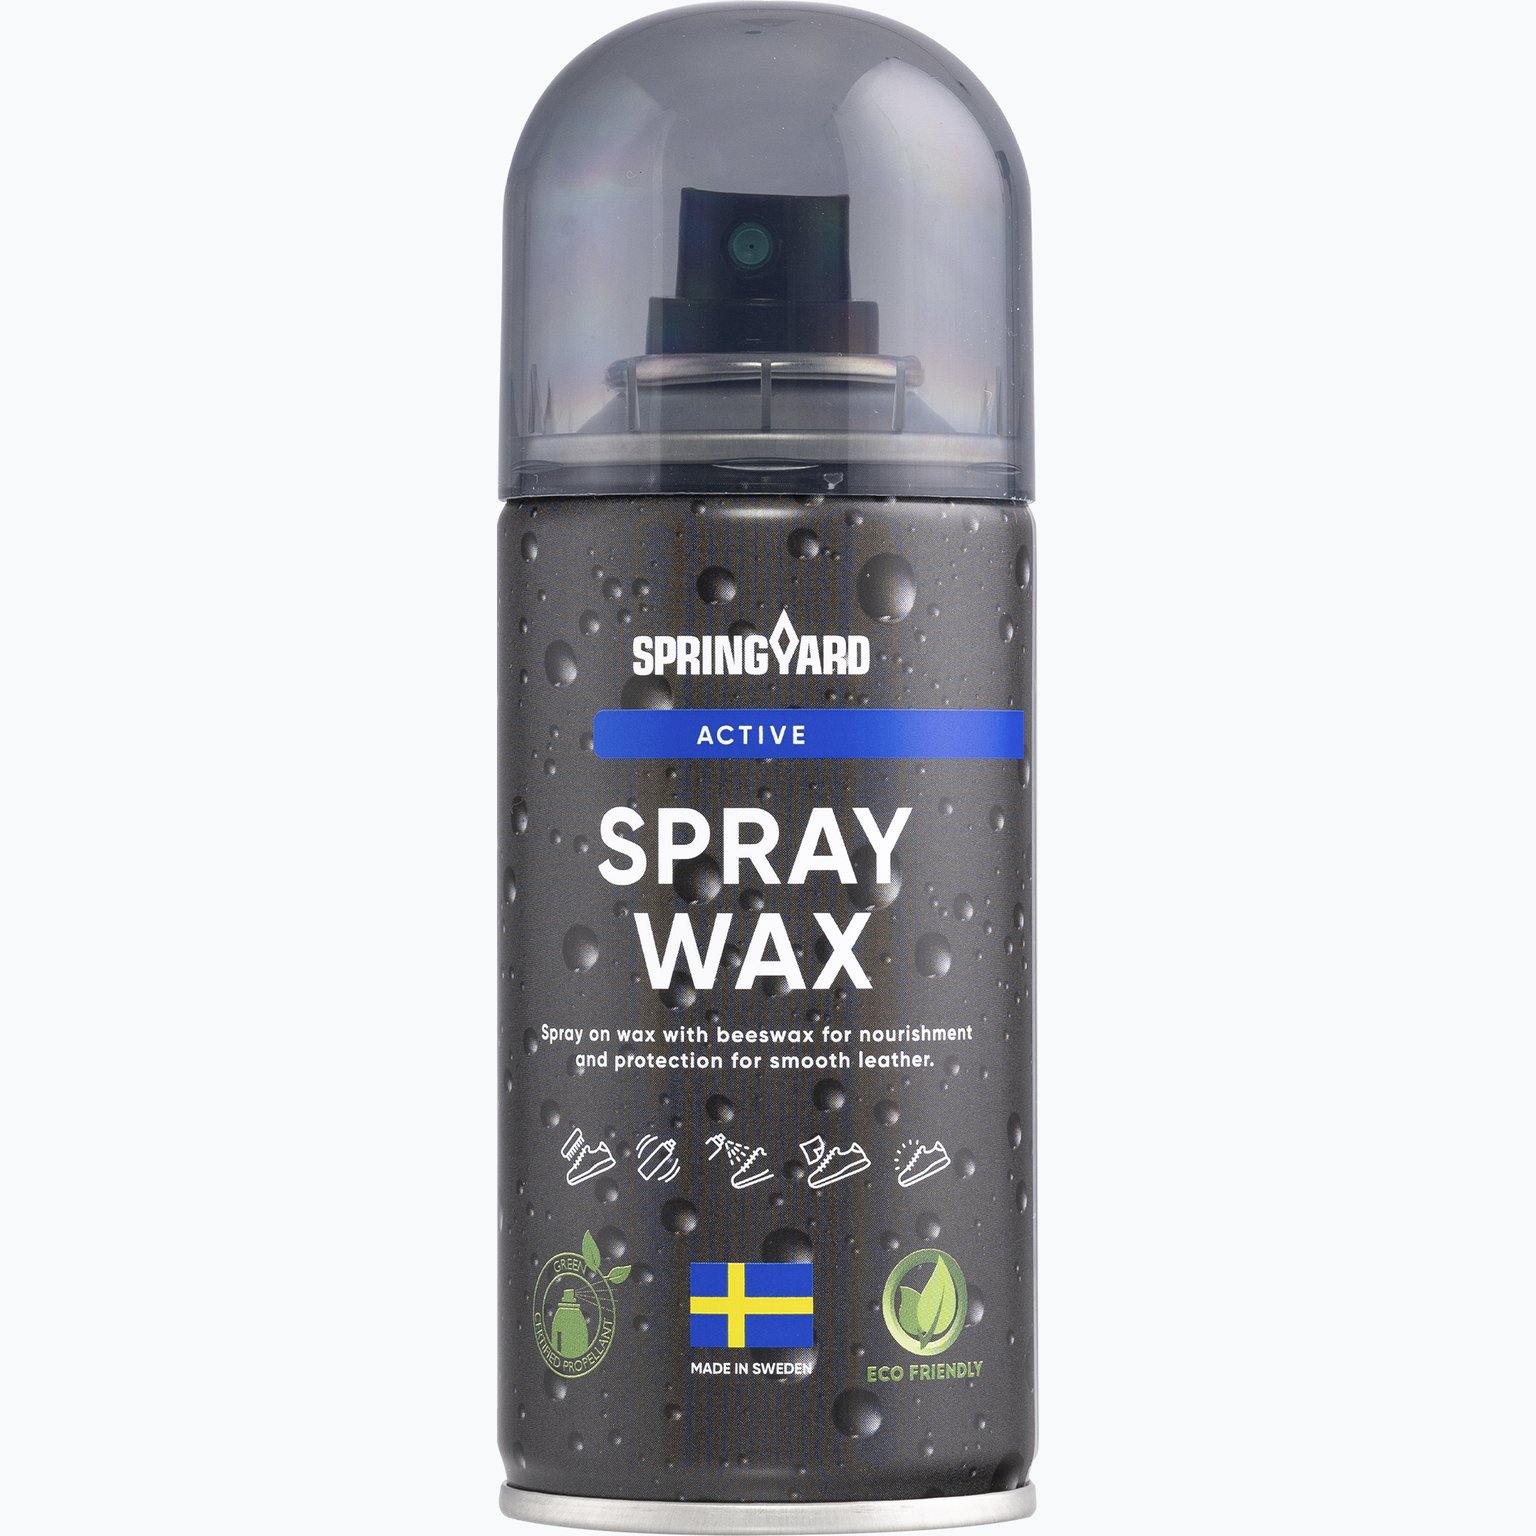 Spray Wax skovax